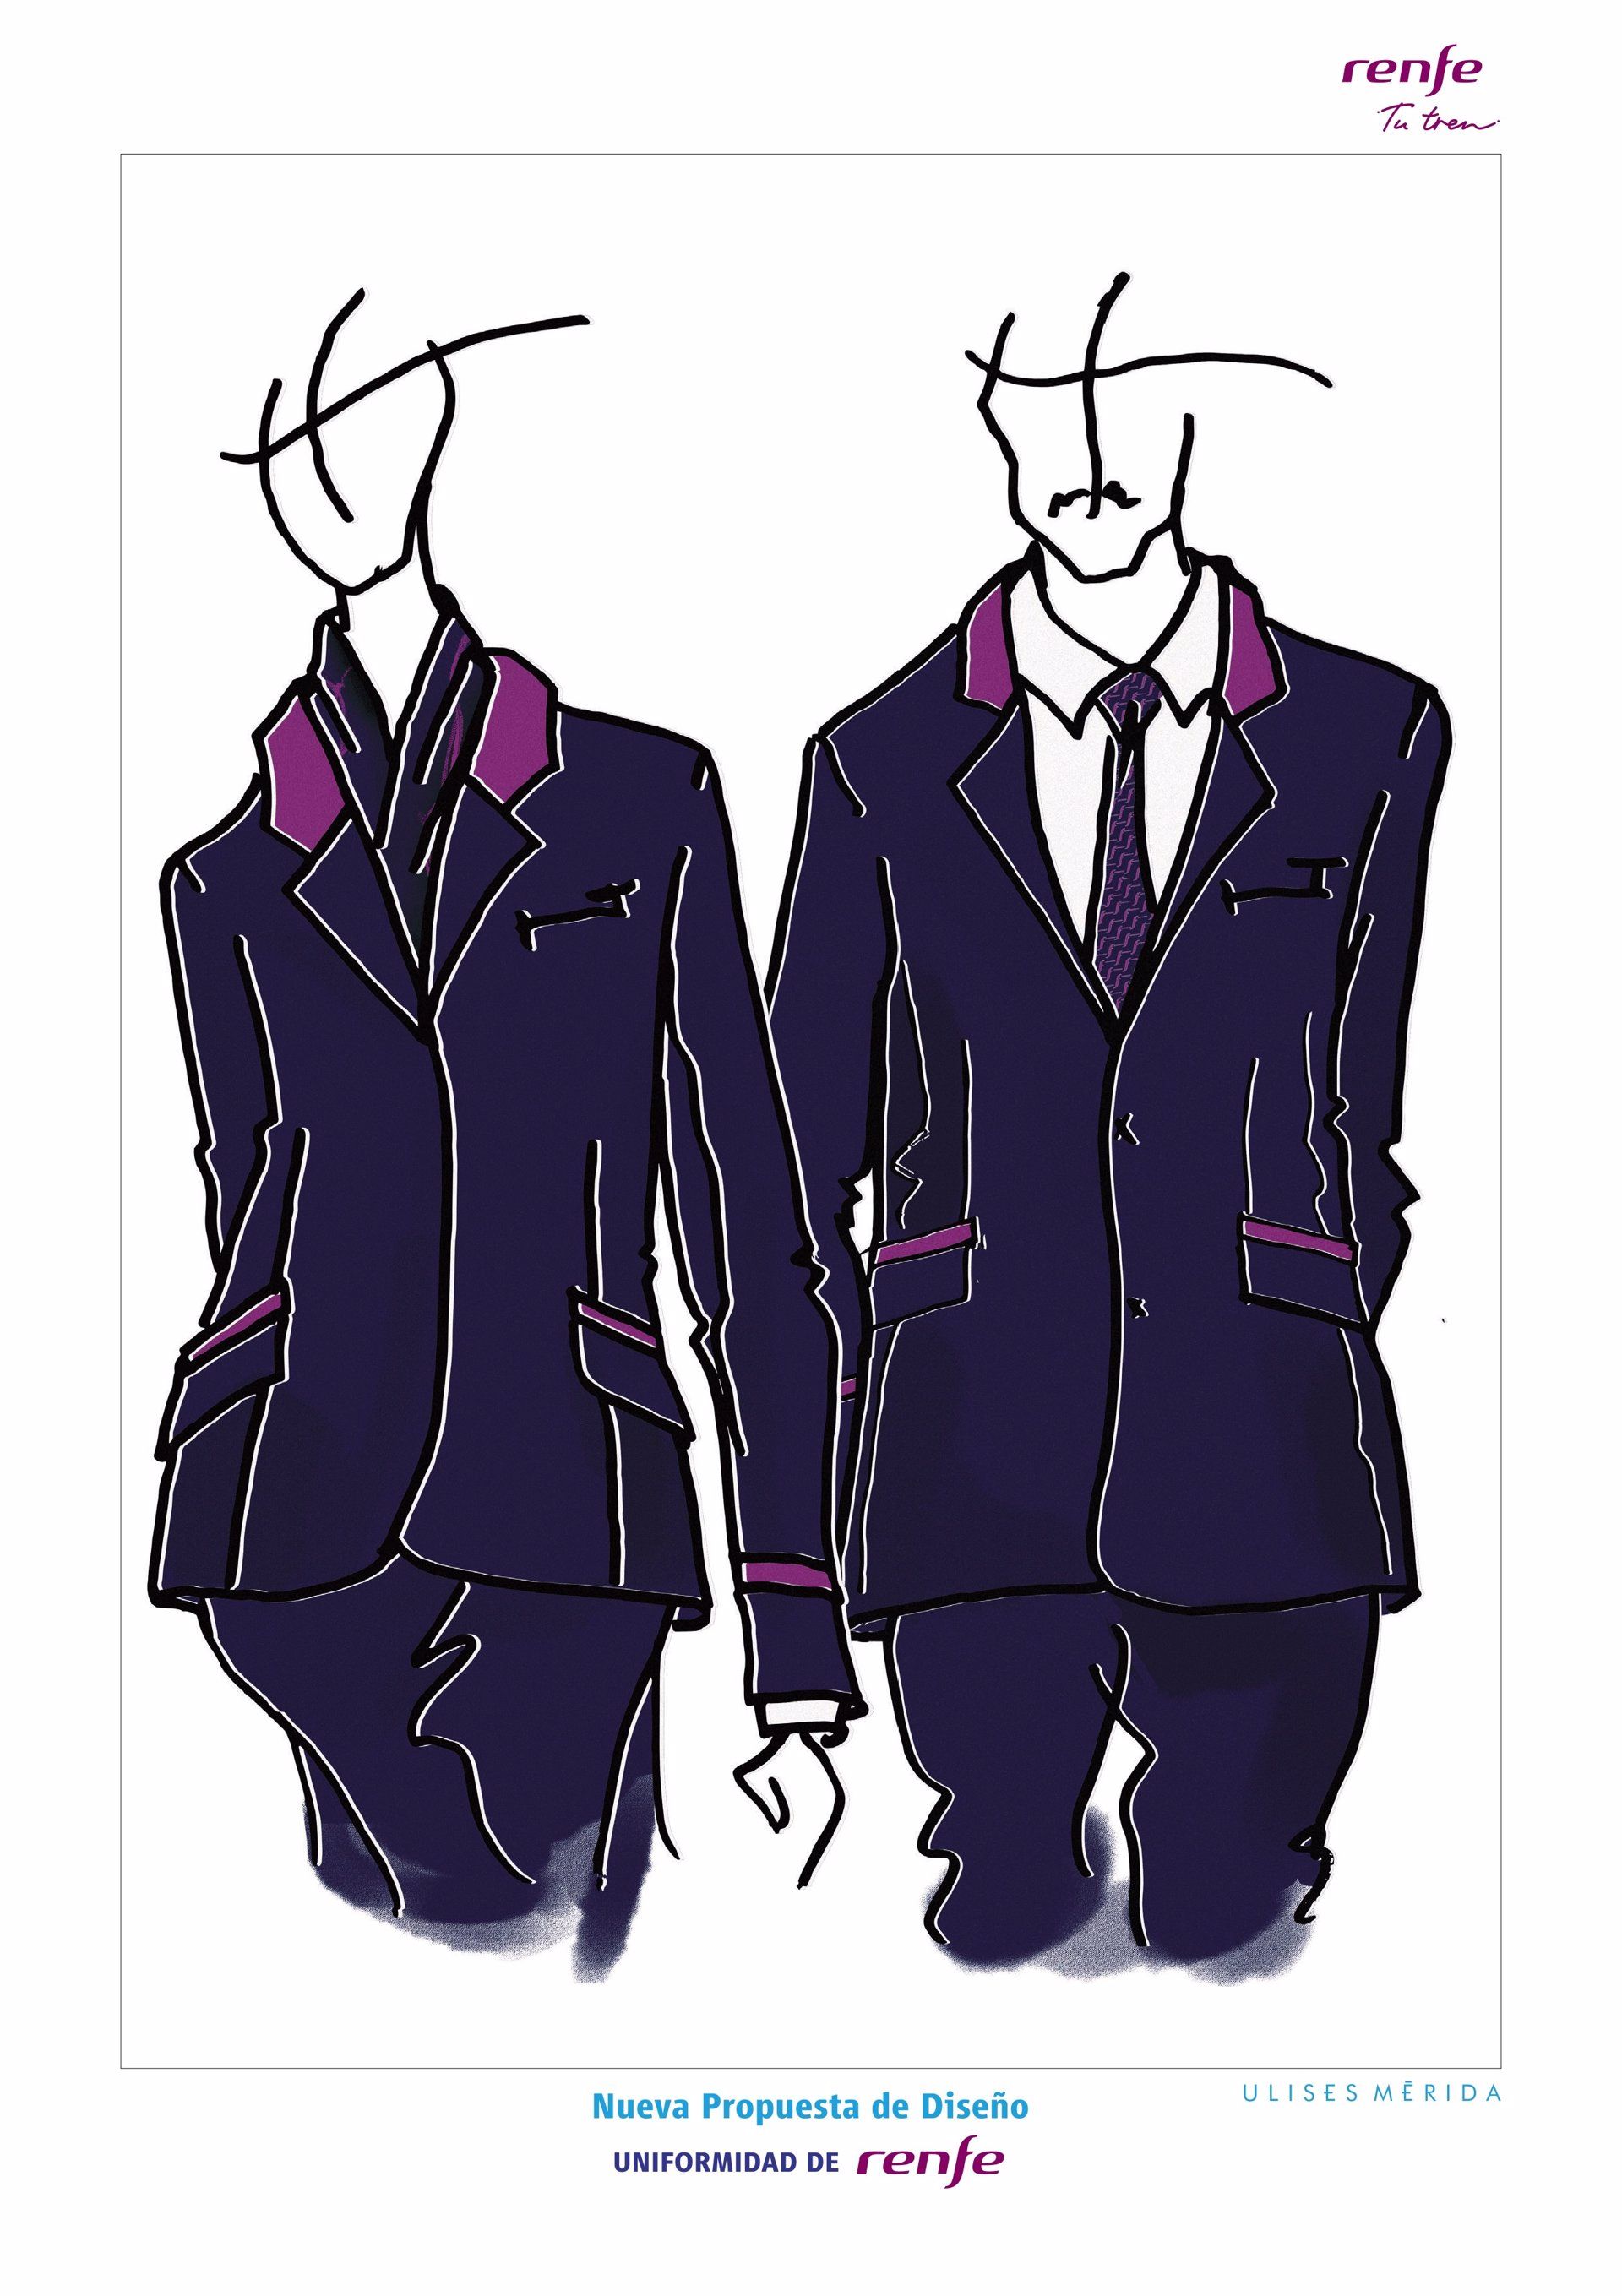 Diseño del uniforme de RENFE